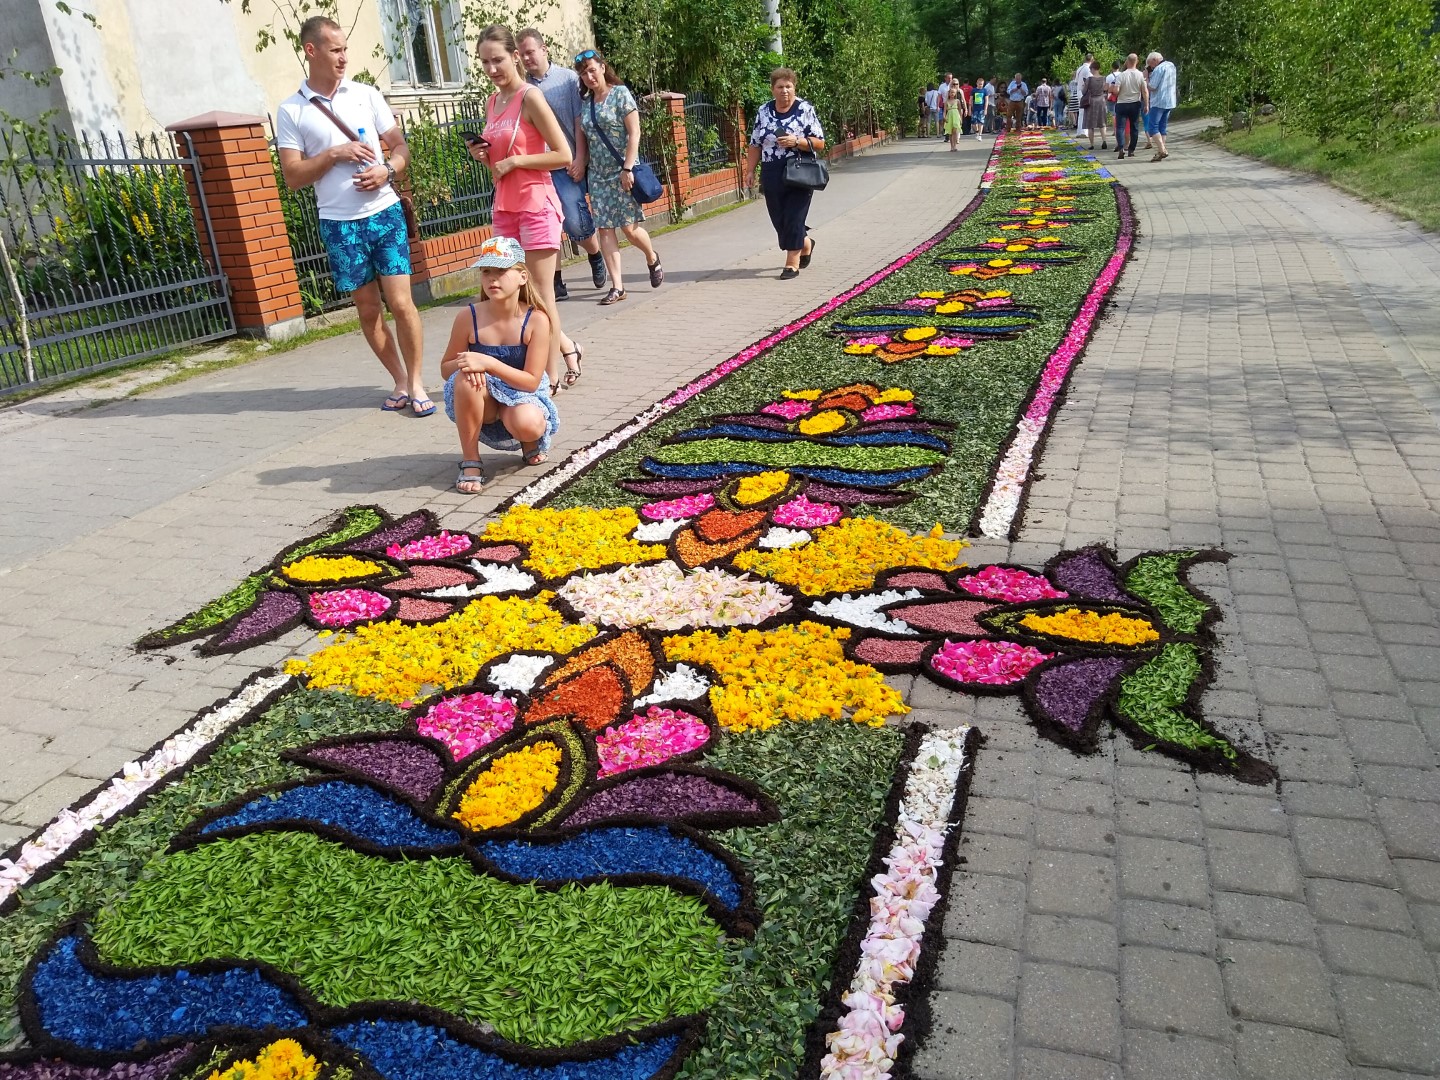 Wielokolorowy dywan z kwiatów. Wokół obserwatorzy